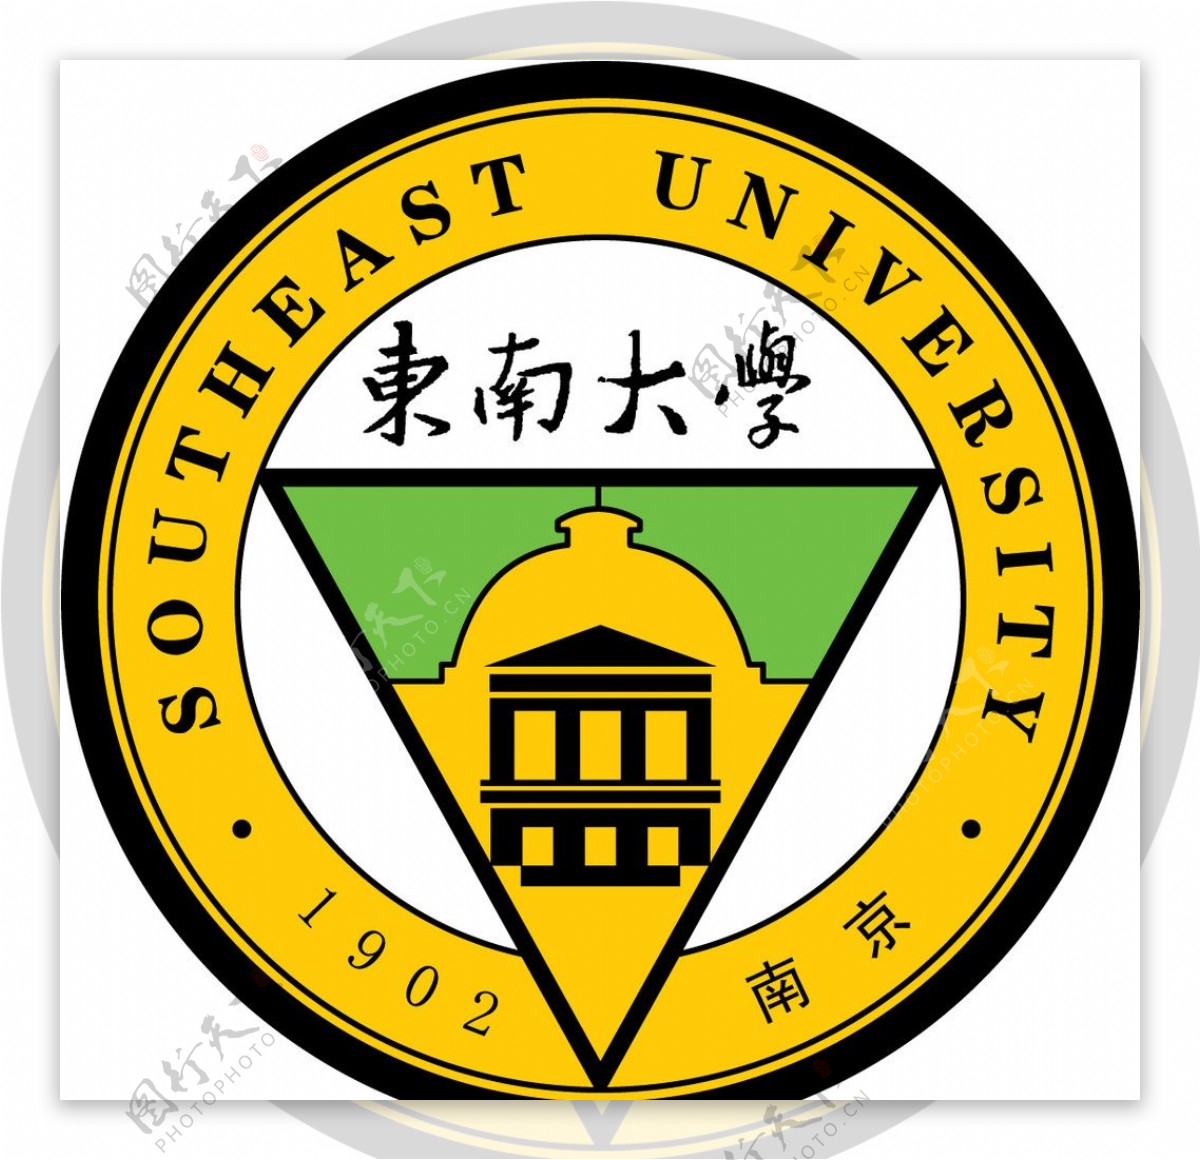 东南大学的标志图片